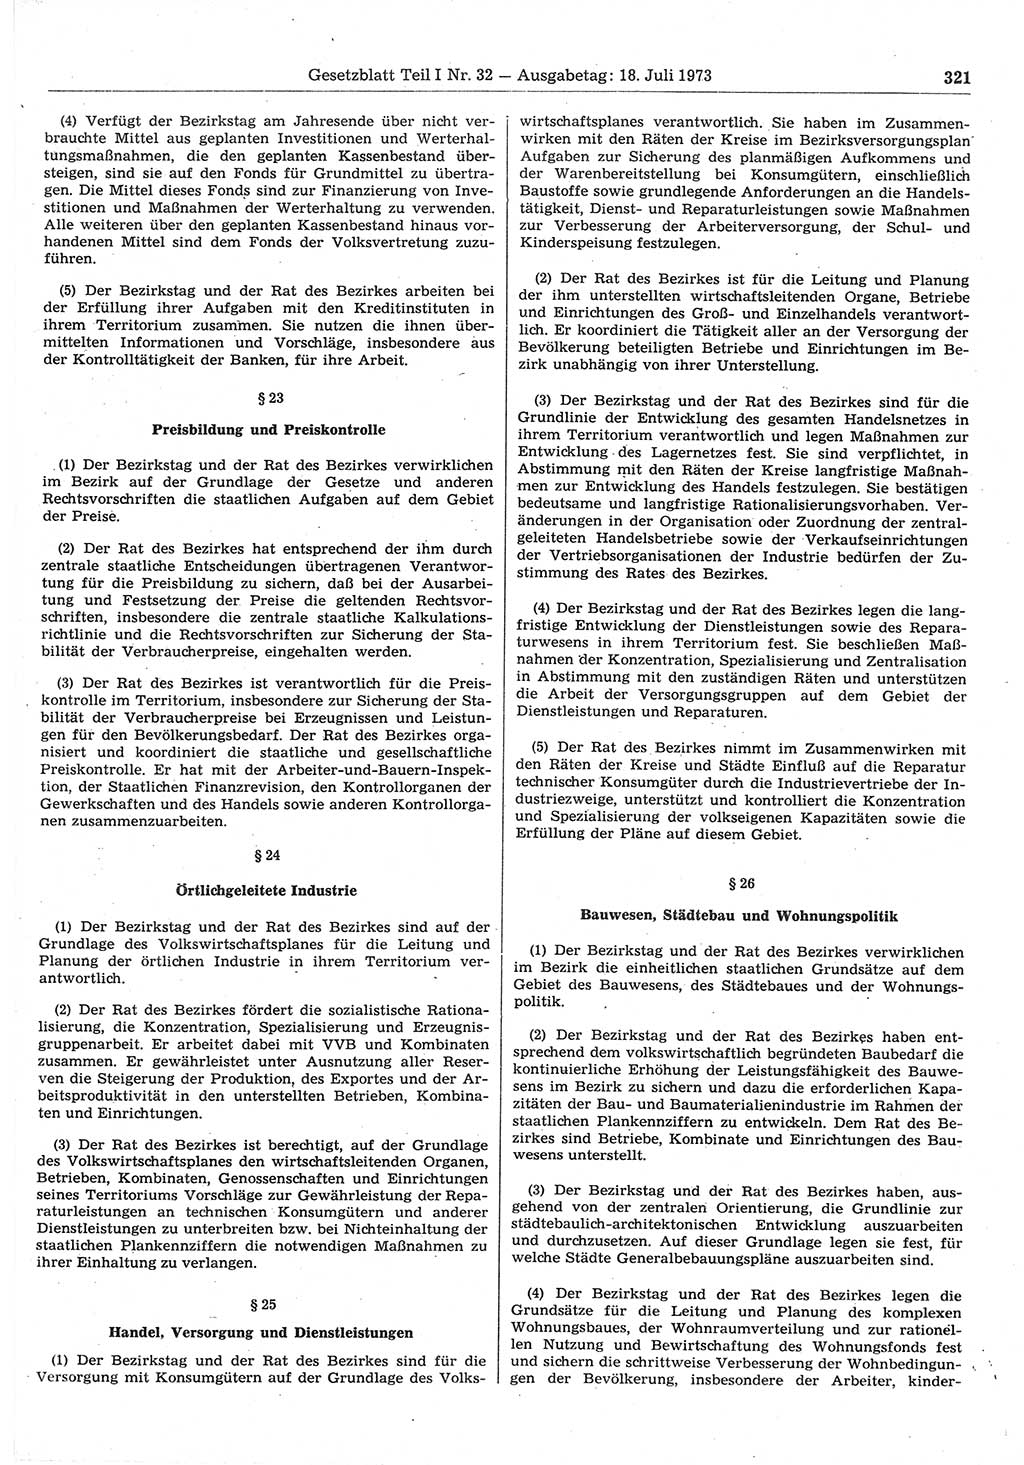 Gesetzblatt (GBl.) der Deutschen Demokratischen Republik (DDR) Teil Ⅰ 1973, Seite 321 (GBl. DDR Ⅰ 1973, S. 321)